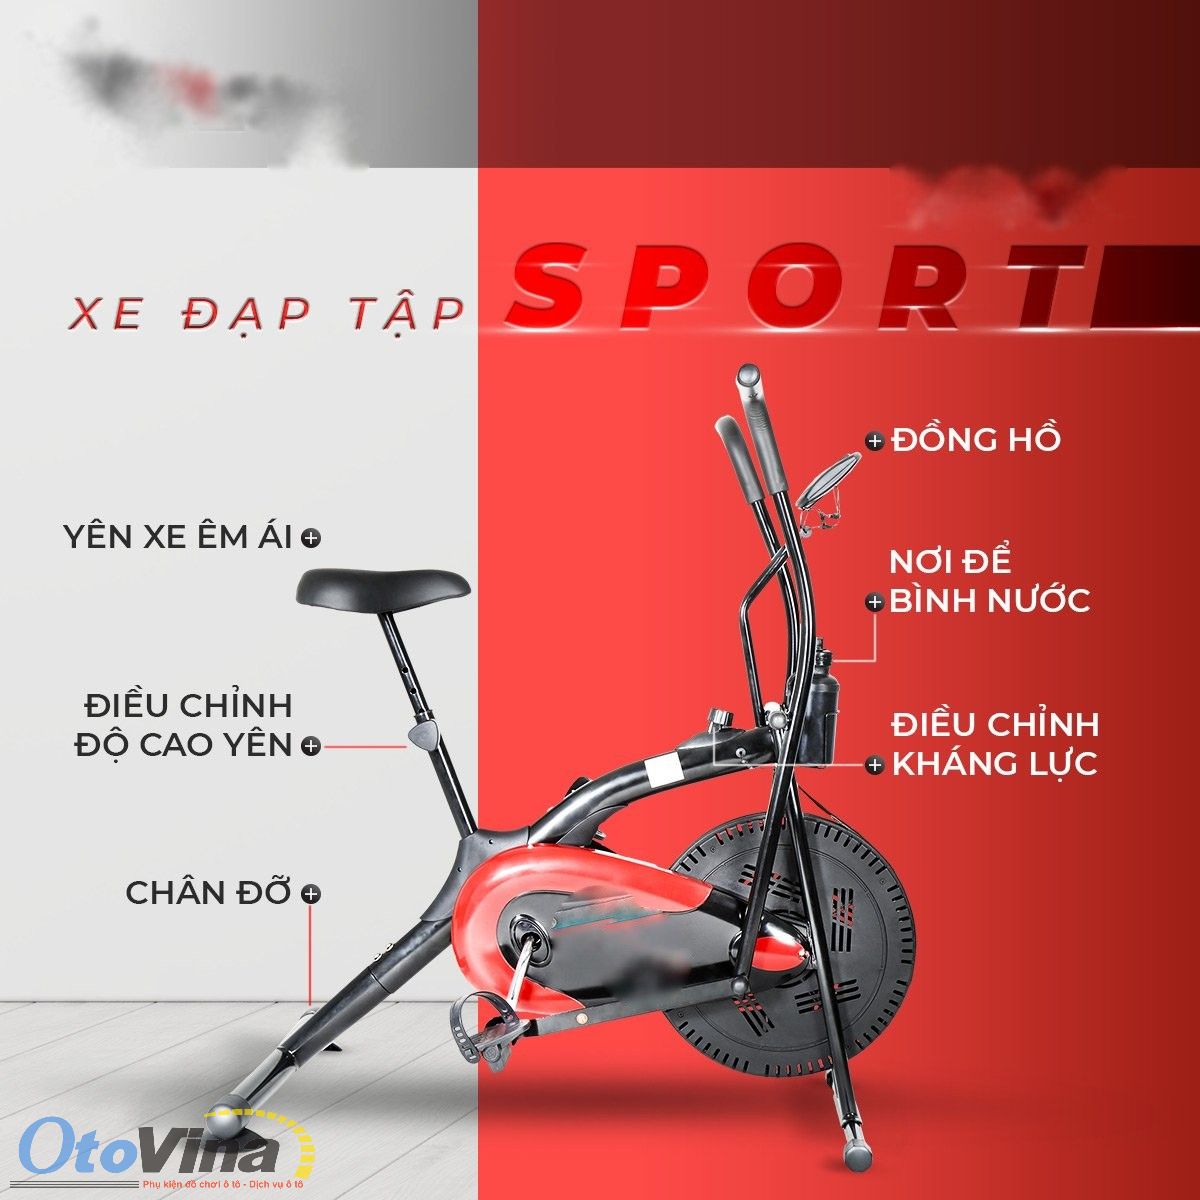 Xe đạp tập Nextsport có thiết kế tay cầm linh hoạt